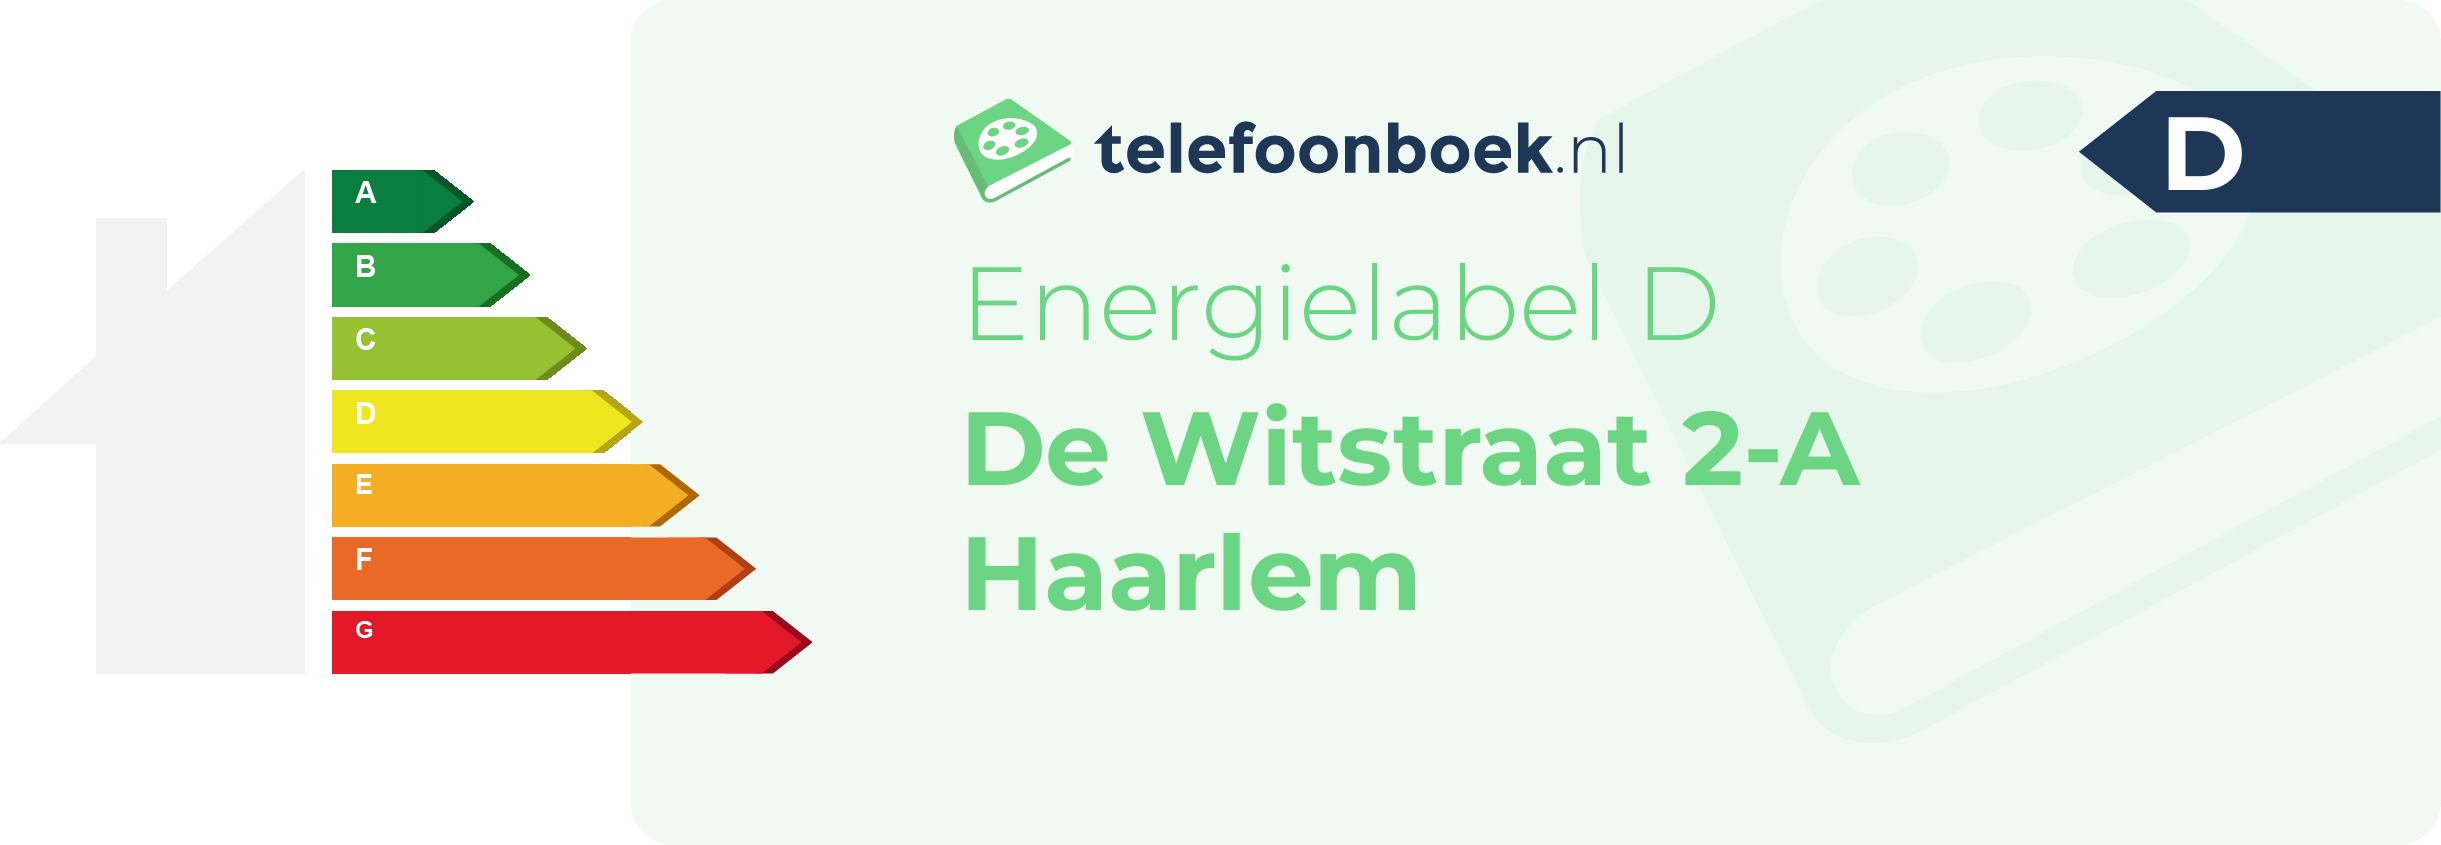 Energielabel De Witstraat 2-A Haarlem